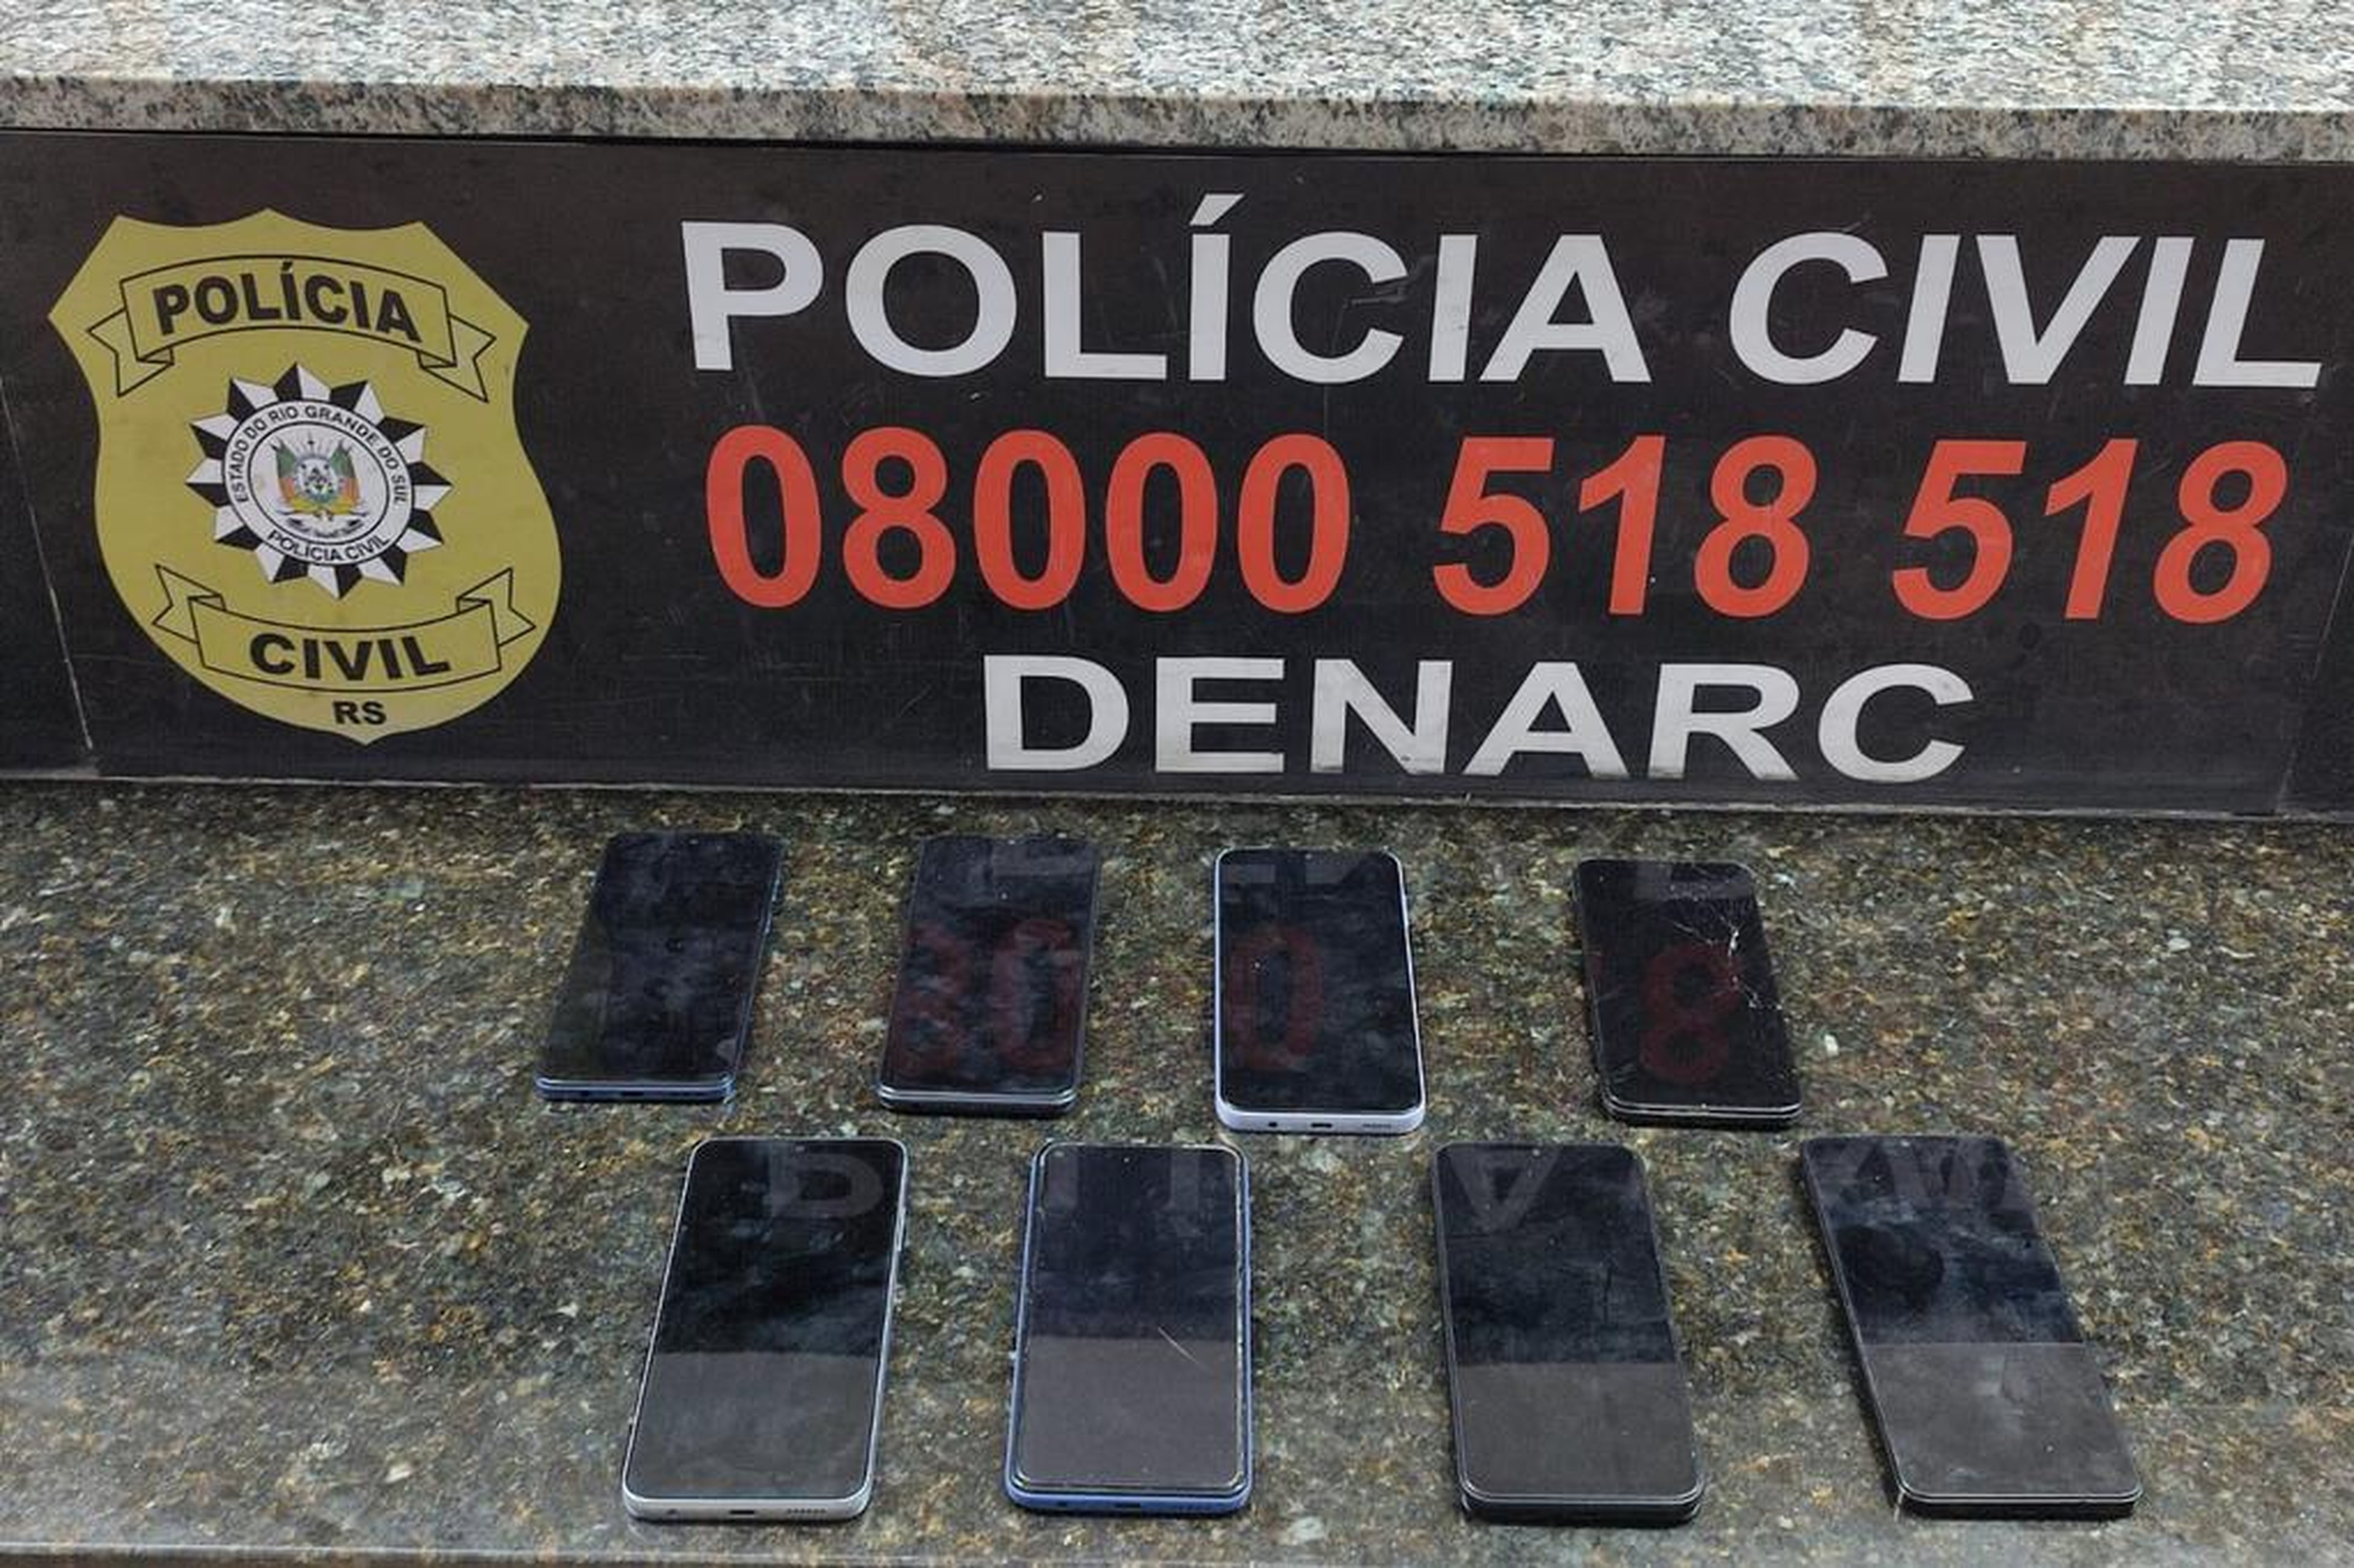 Polícia Civil / Denarc/Divulgação